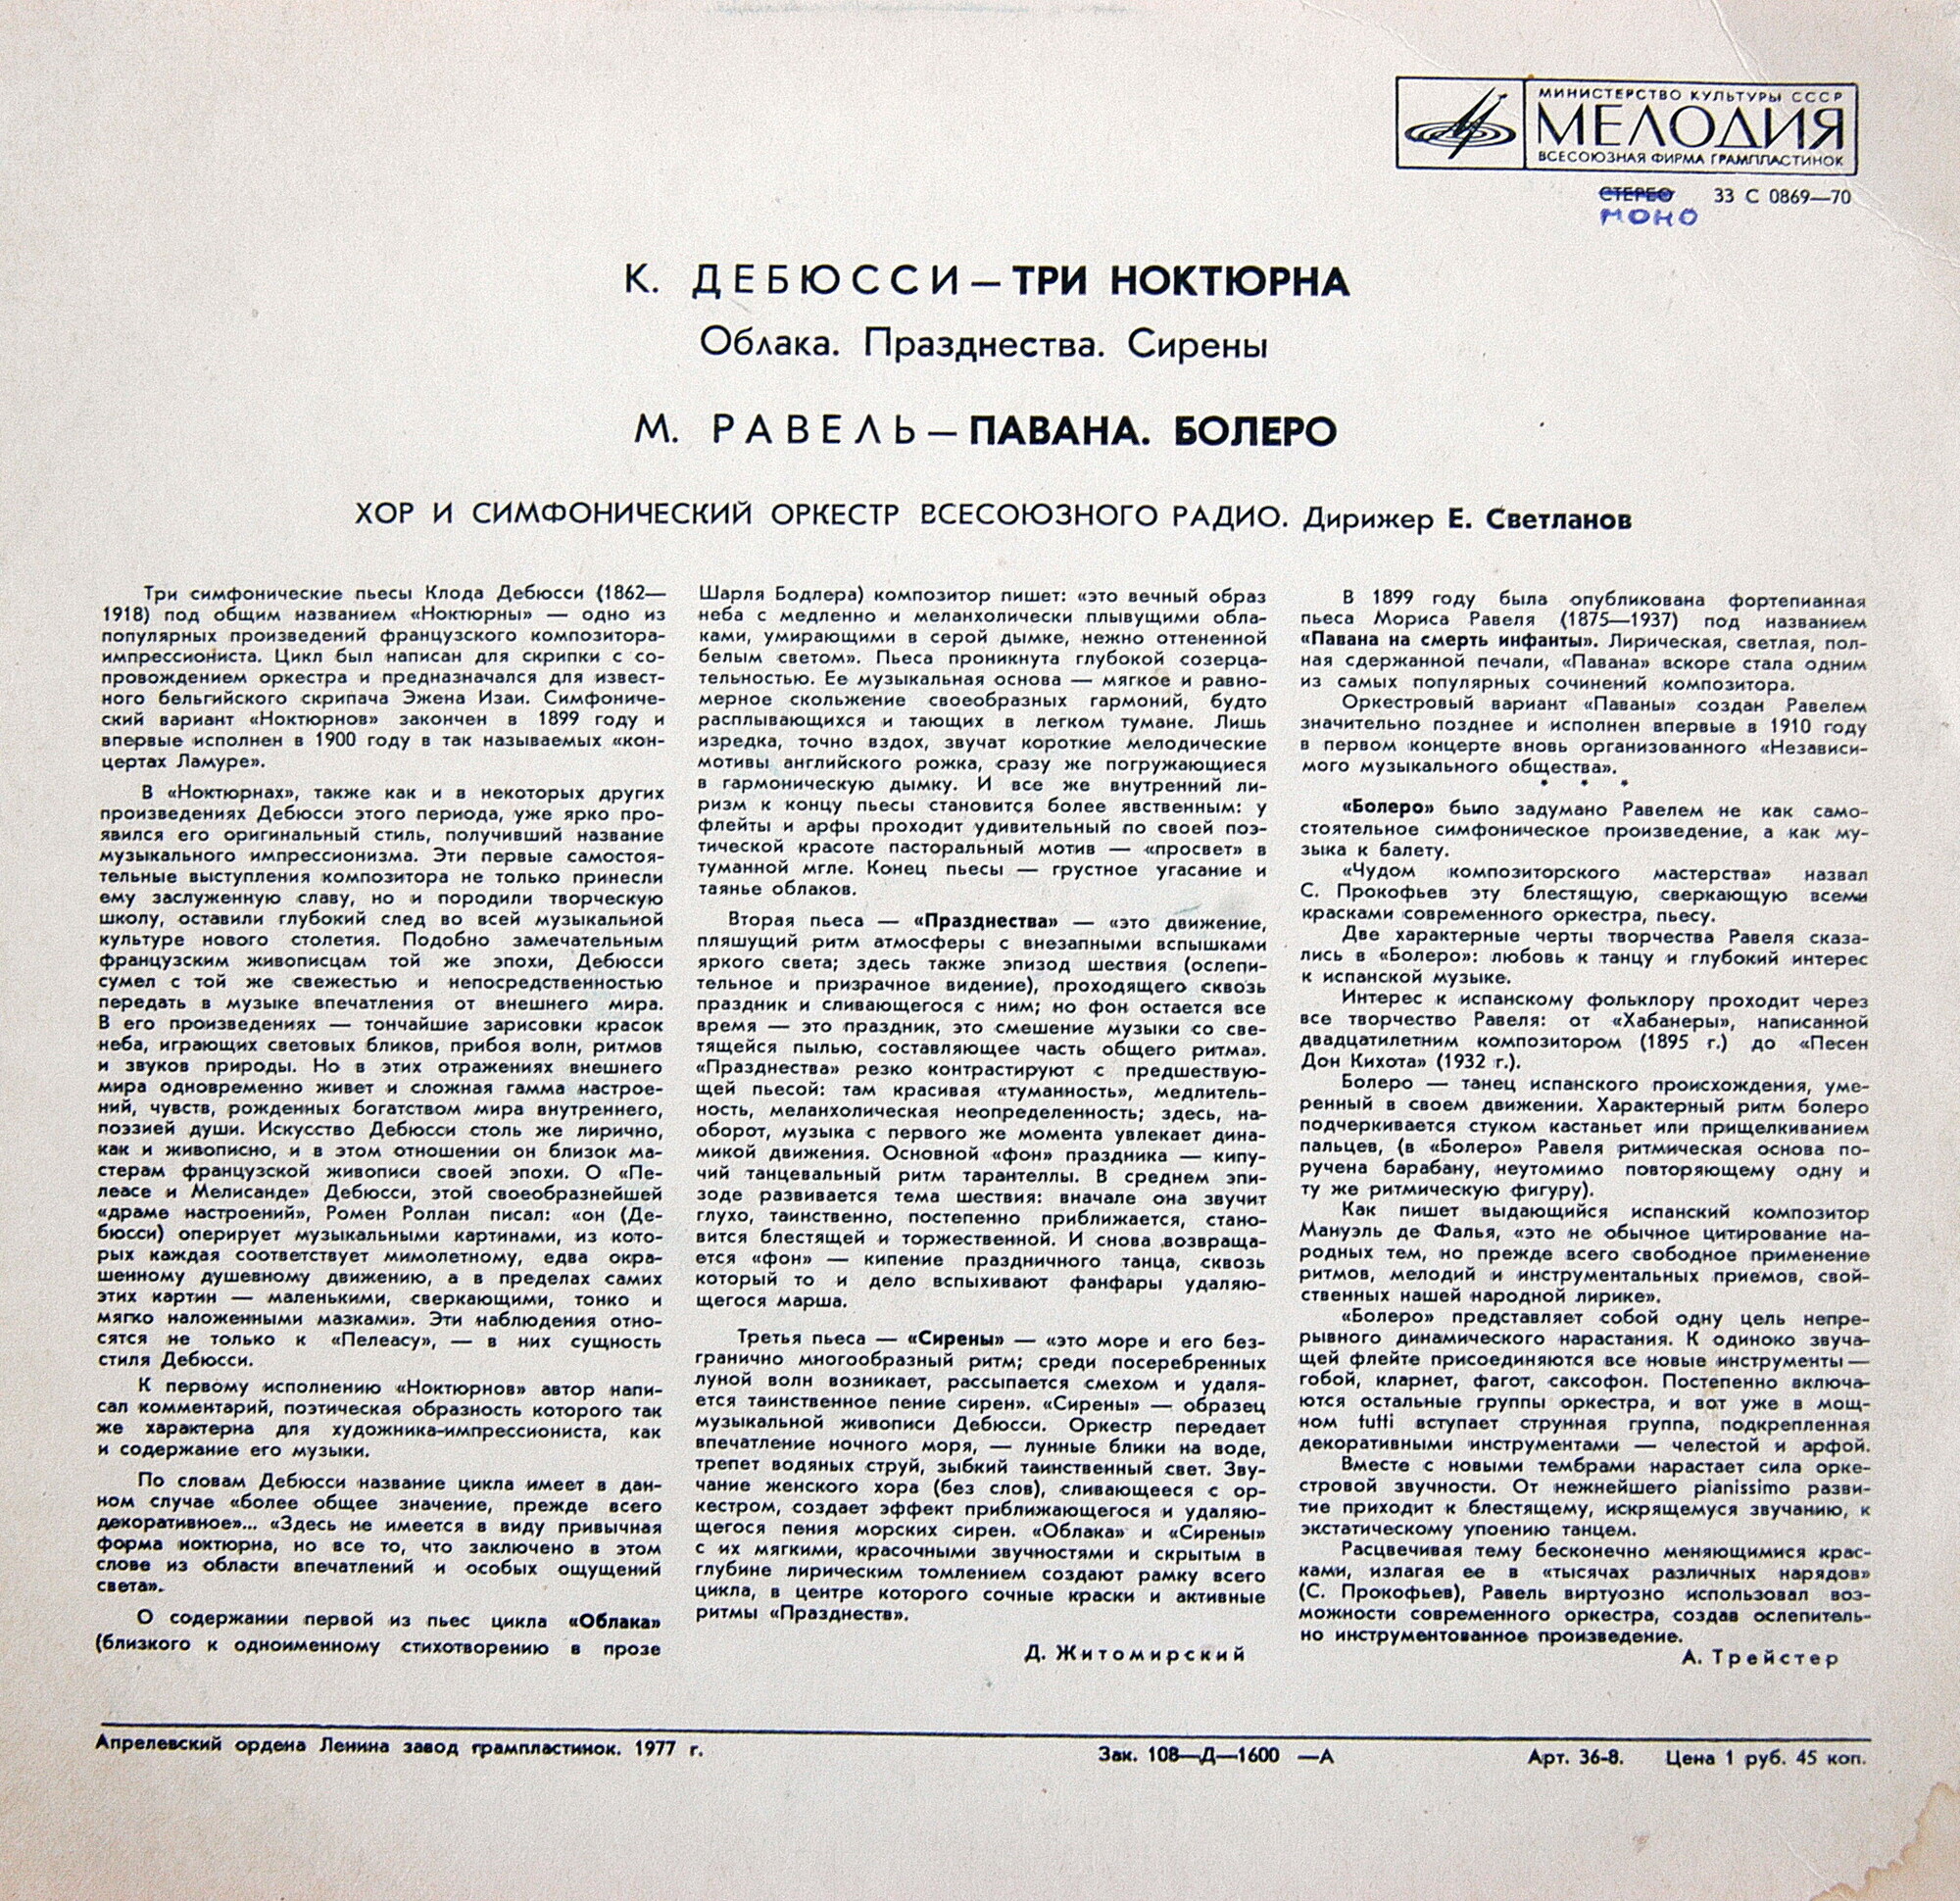 Клод Дебюсси (Achille-Claude Debussy), Морис Равель (Joseph Maurice Ravel)